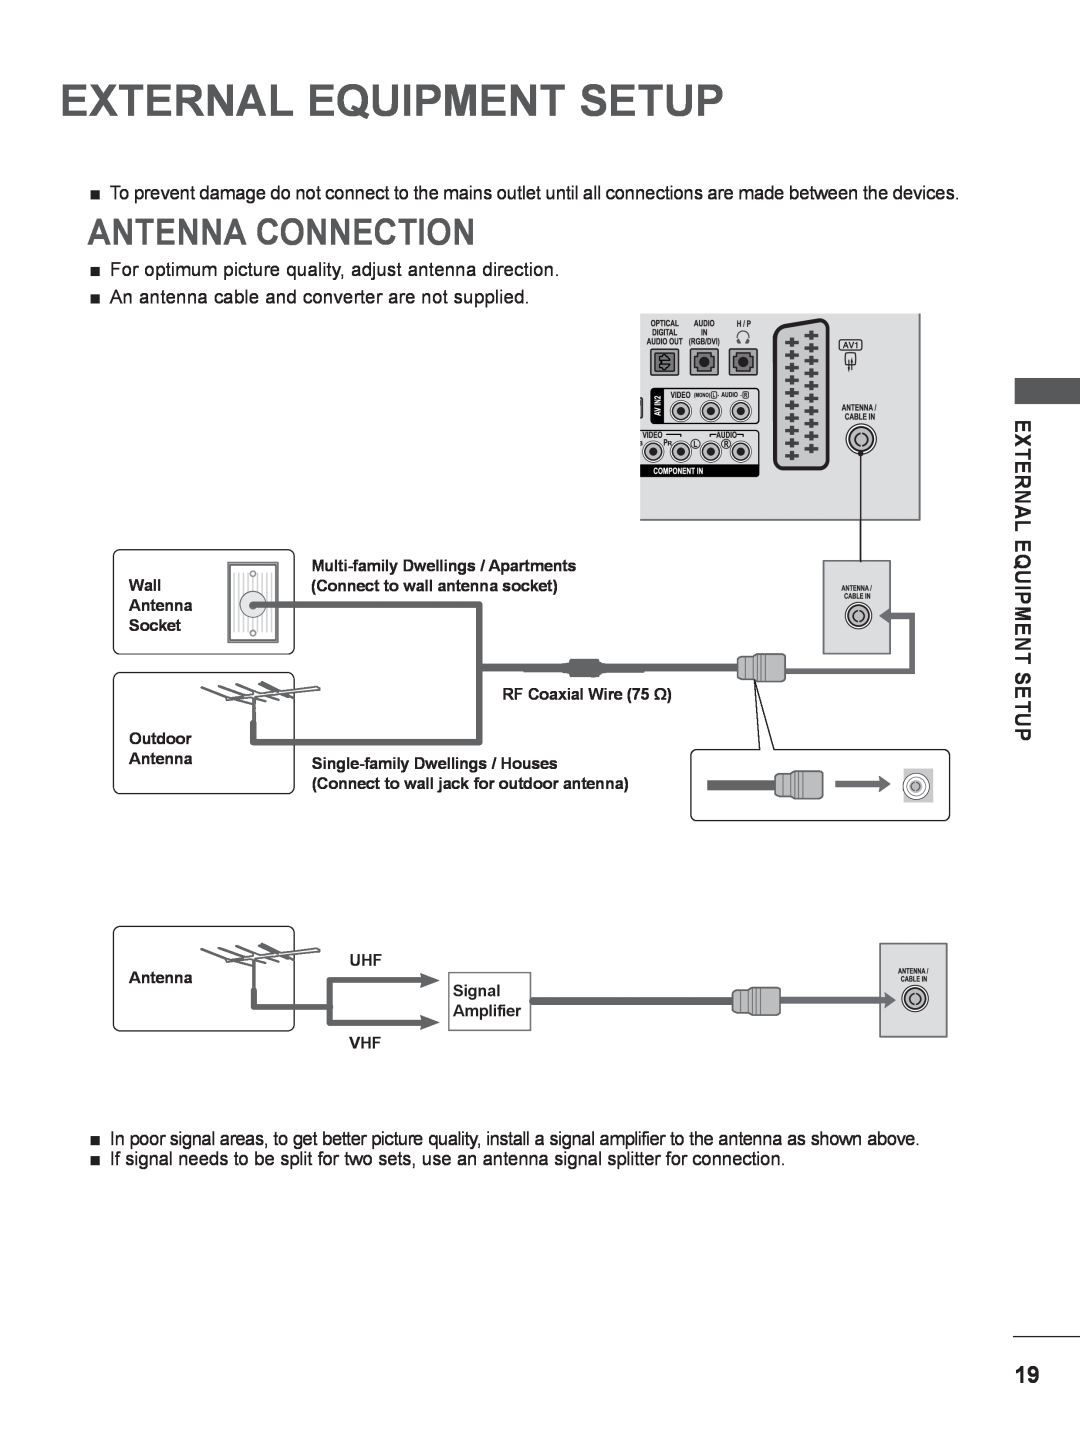 LG Electronics M2380DF, M2780DF, M2780DN, M2380DN, M2380DB, M2280DN, M2280DB External Equipment Setup, Antenna Connection 